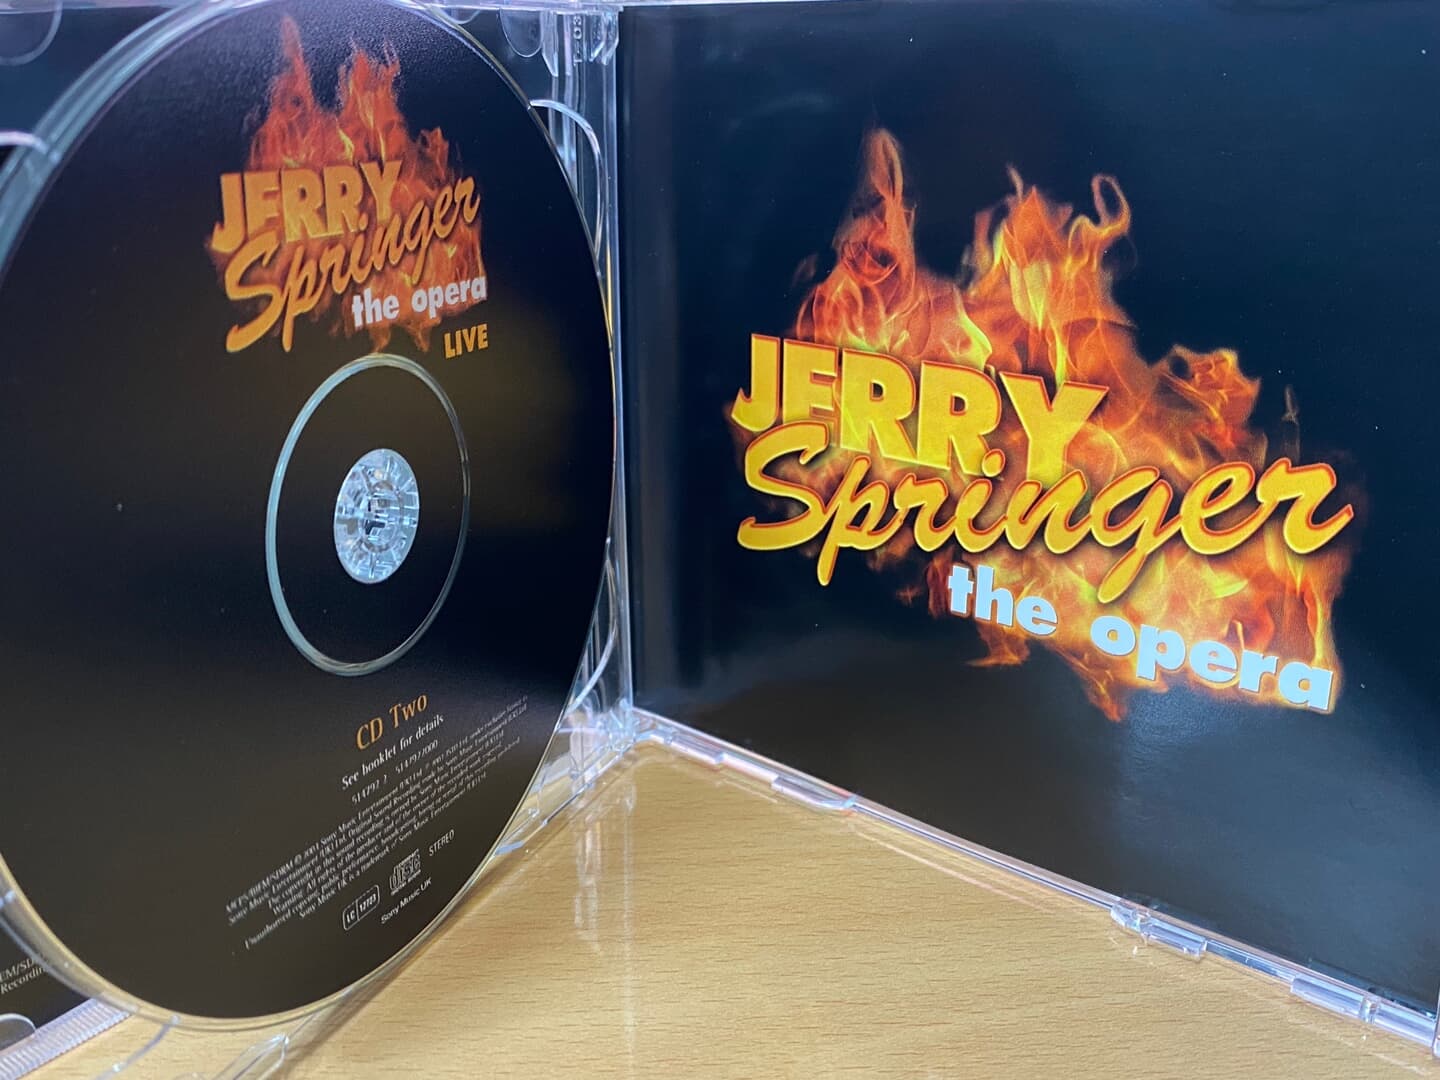 제리 스프링어 디 오페라 - Jerry Springer The Opera Live OST 2Cds [U.K발매]